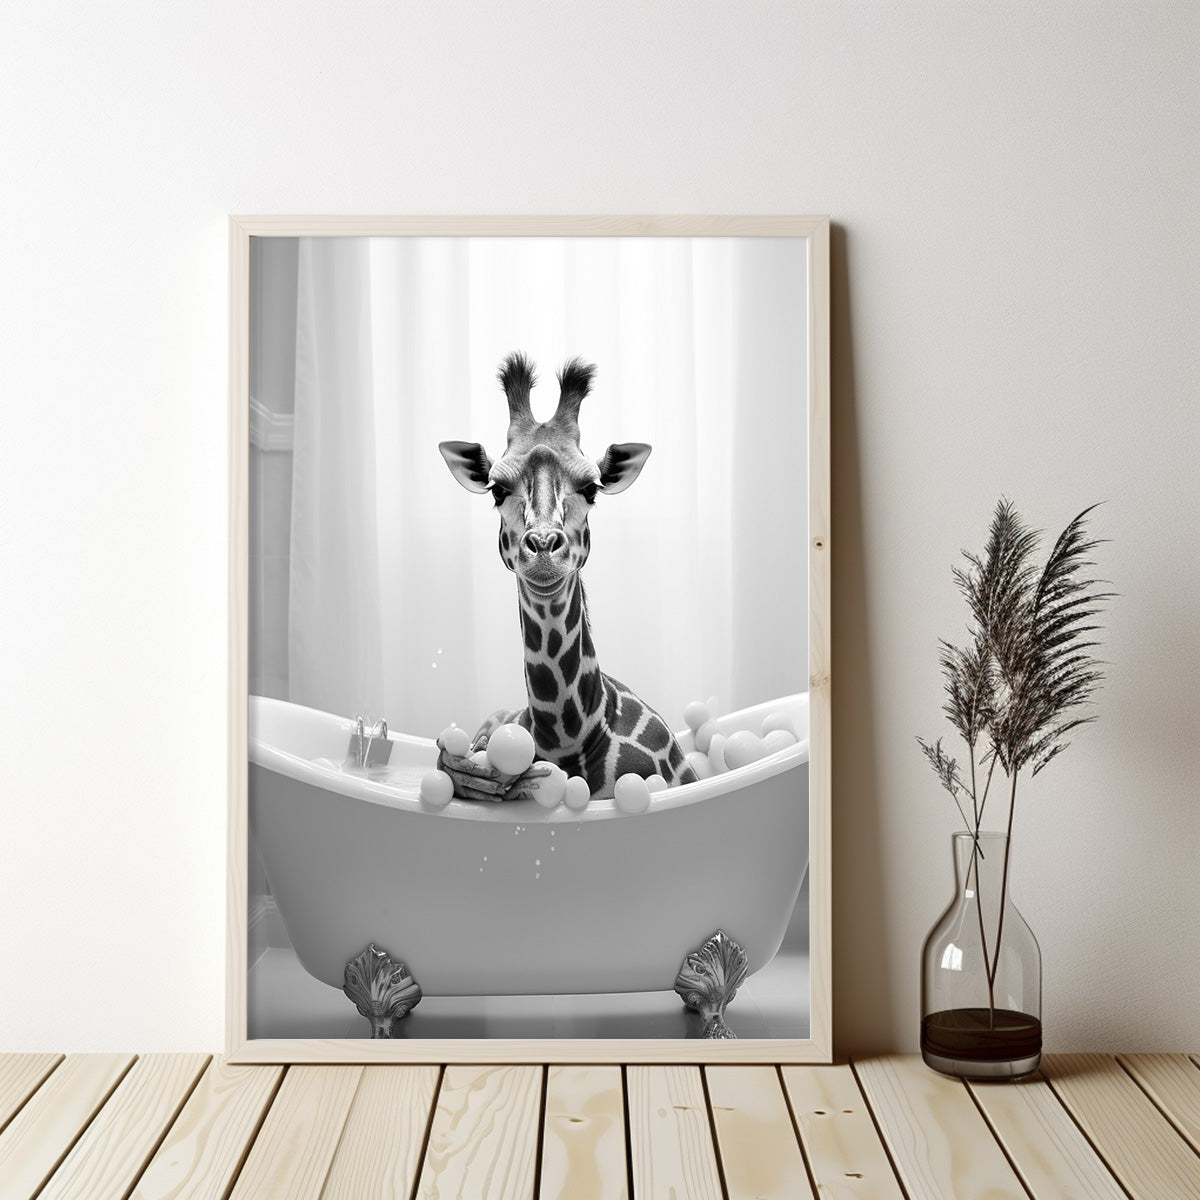 Cute Giraffe 02 in the Bathtub, Giraffe Bathroom Decor, Canvas Wall Art, Funny Animals Wall Art, Funny Bathroom Wall Decor, Print Minimalist Modern Farmhouse Art Bathroom Wall Decor